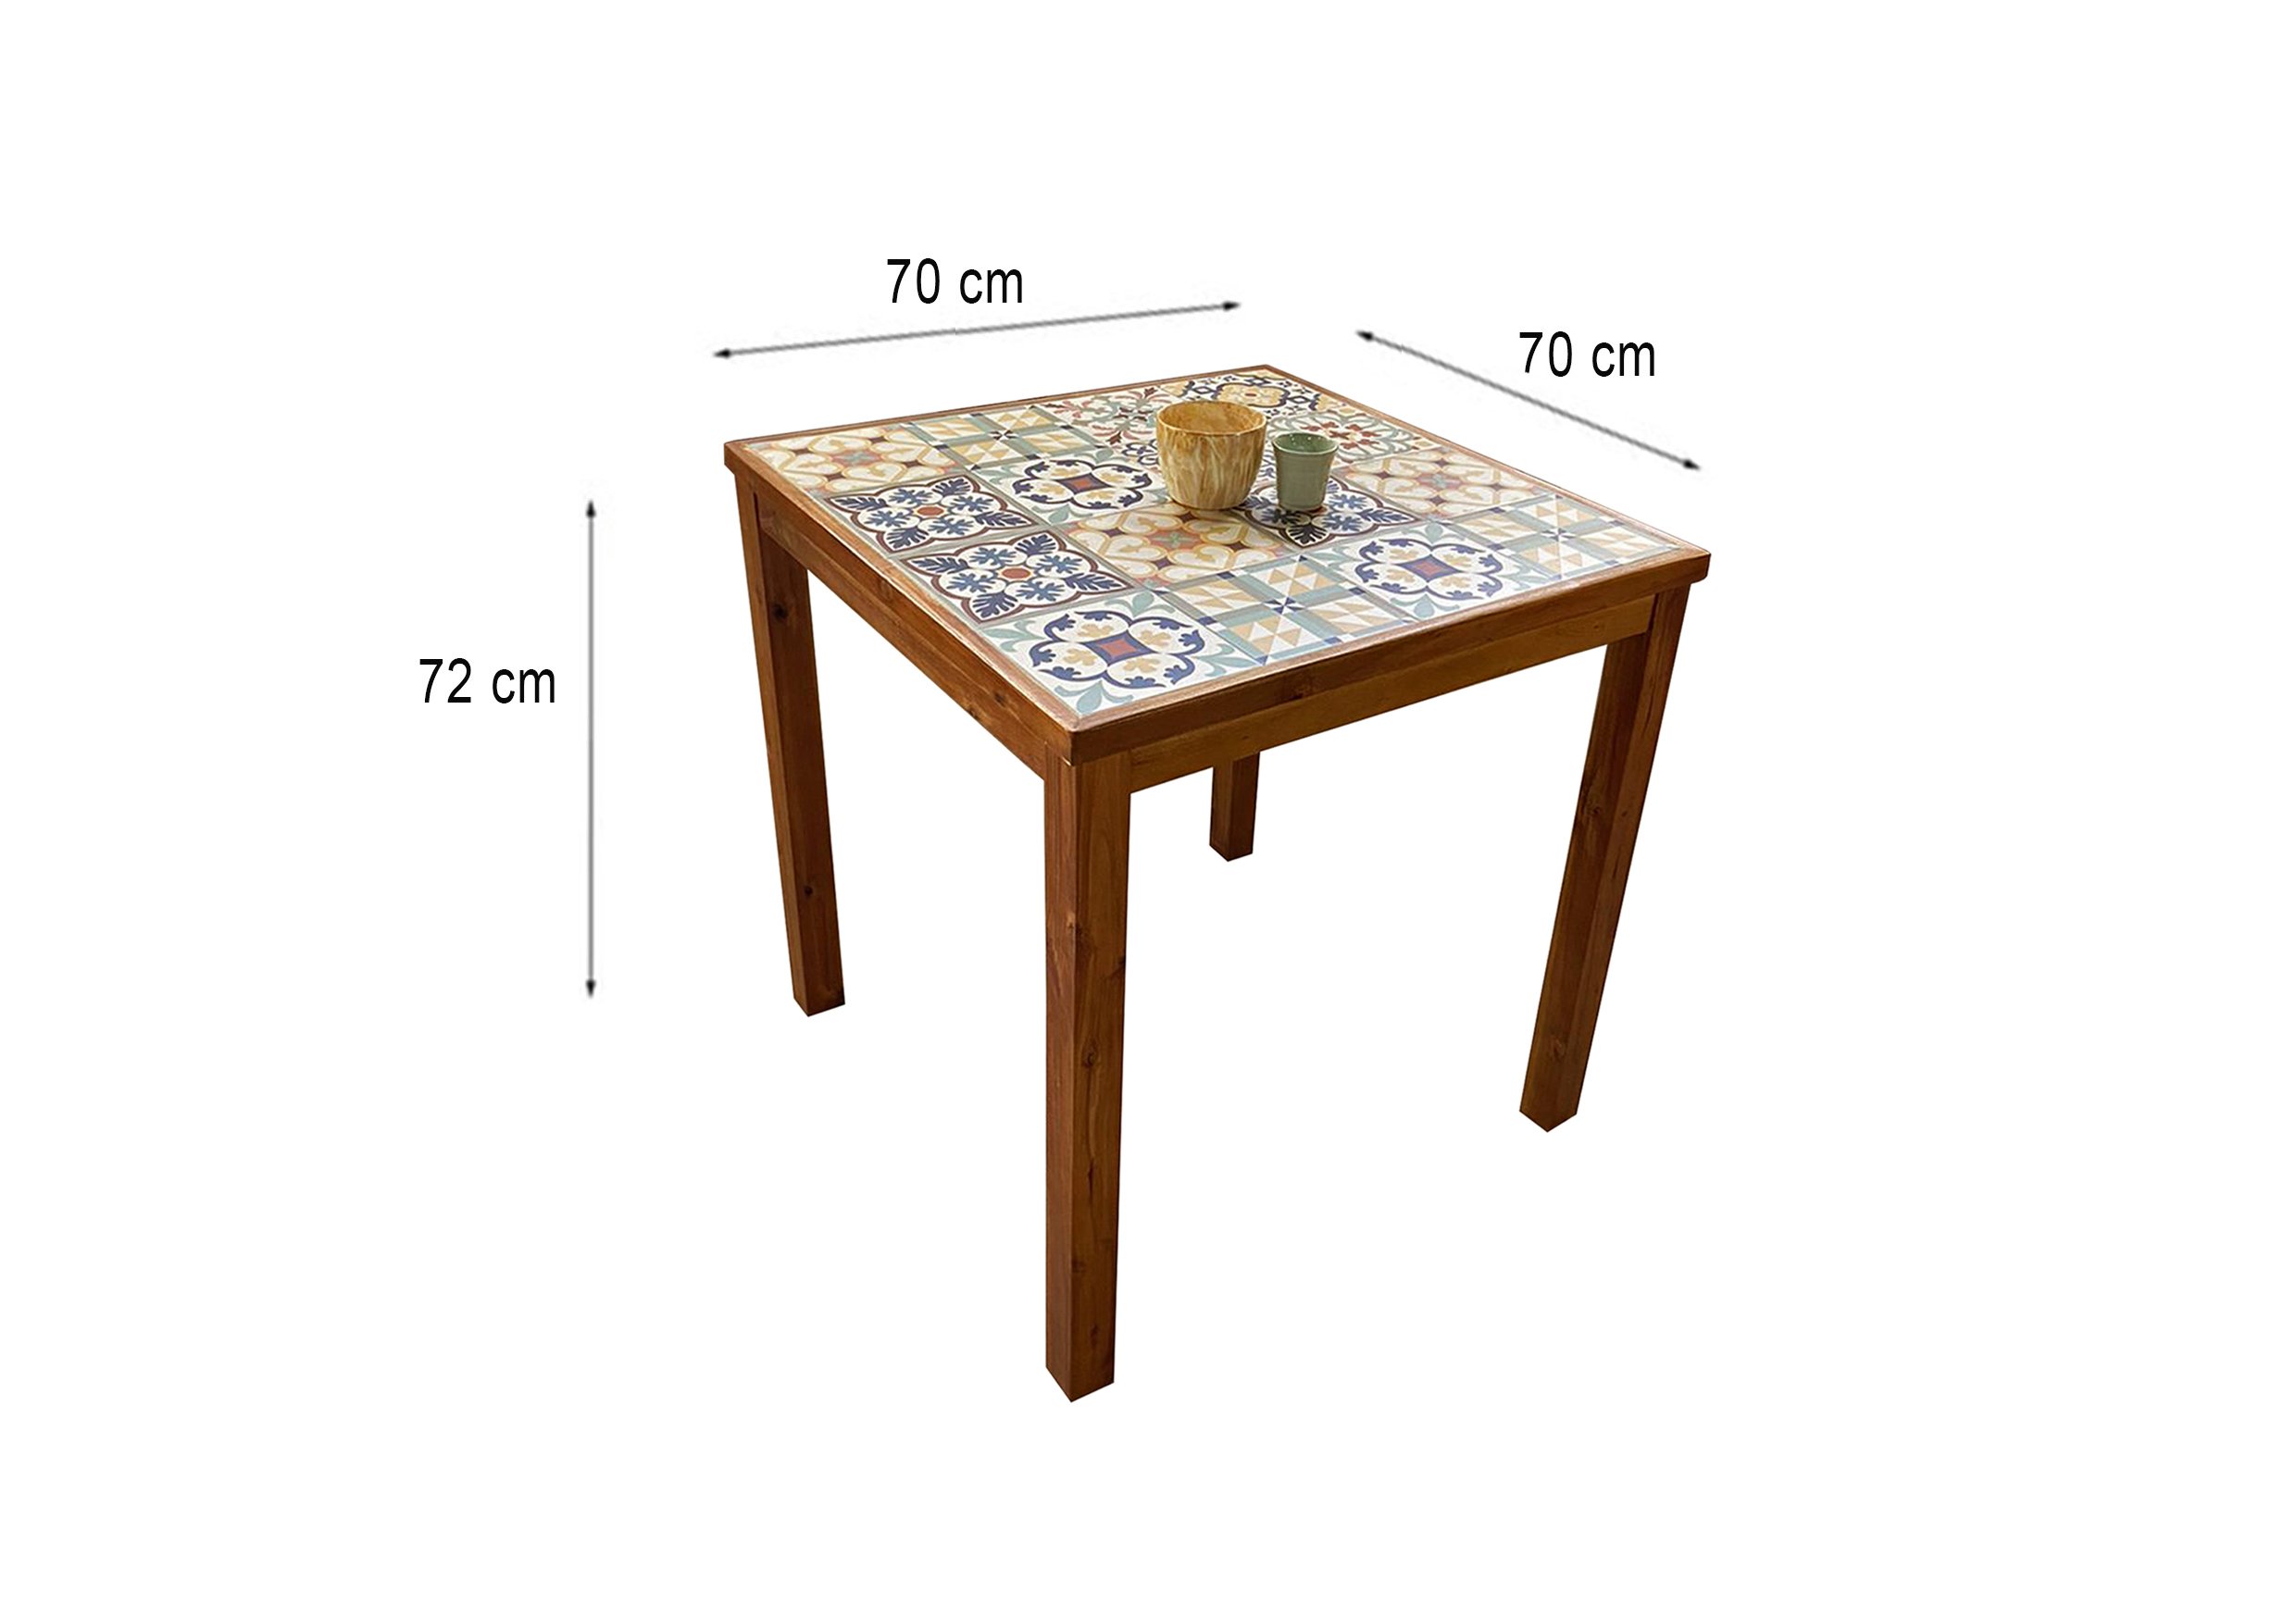 Afredo Square Table ( Dimension).jpg